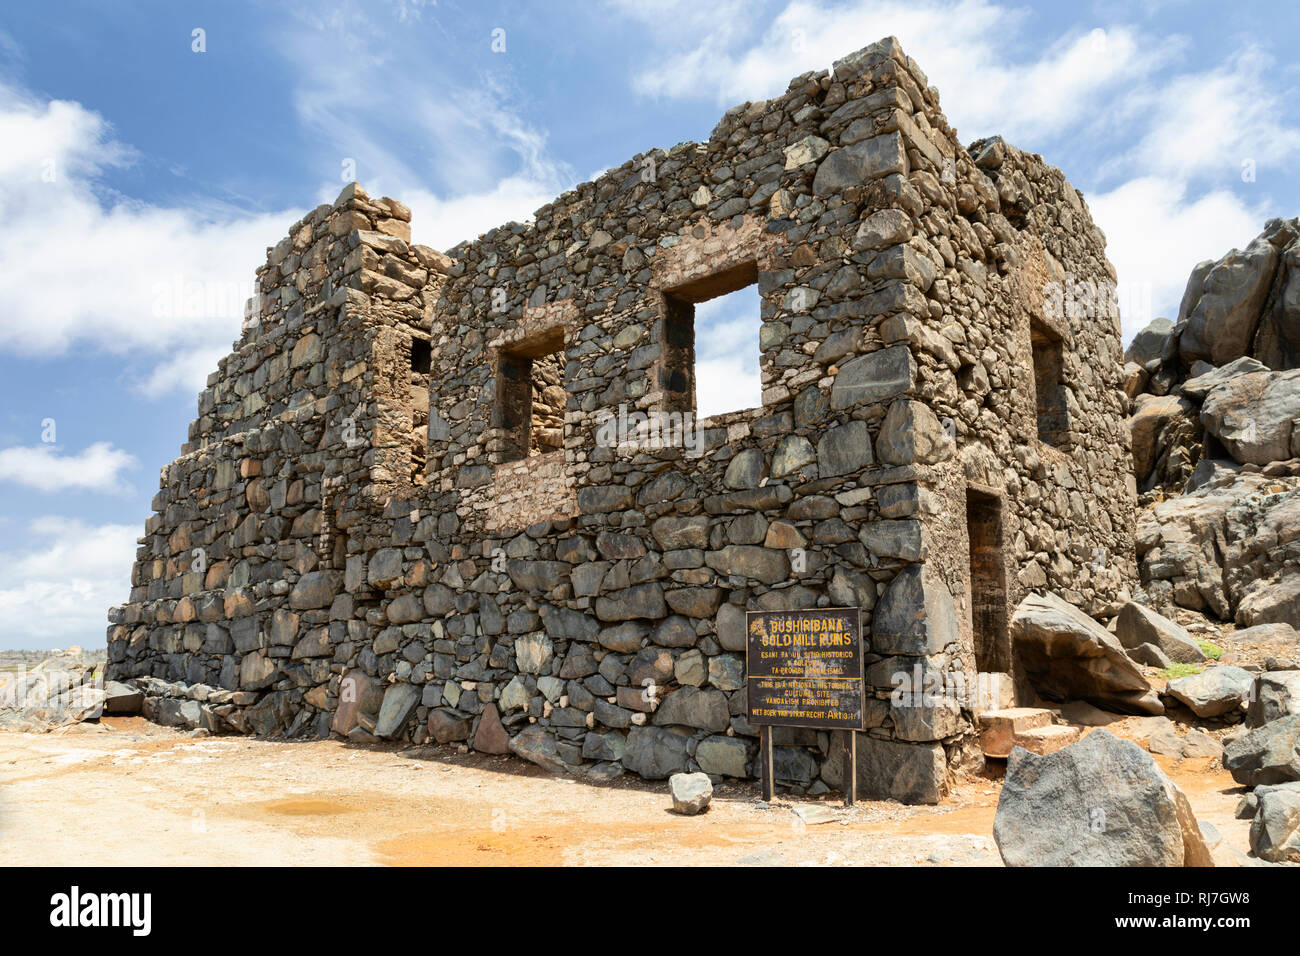 La mina de oro Bushiribana - un sitio cultural histórico nacional, Aruba, el Caribe Foto de stock